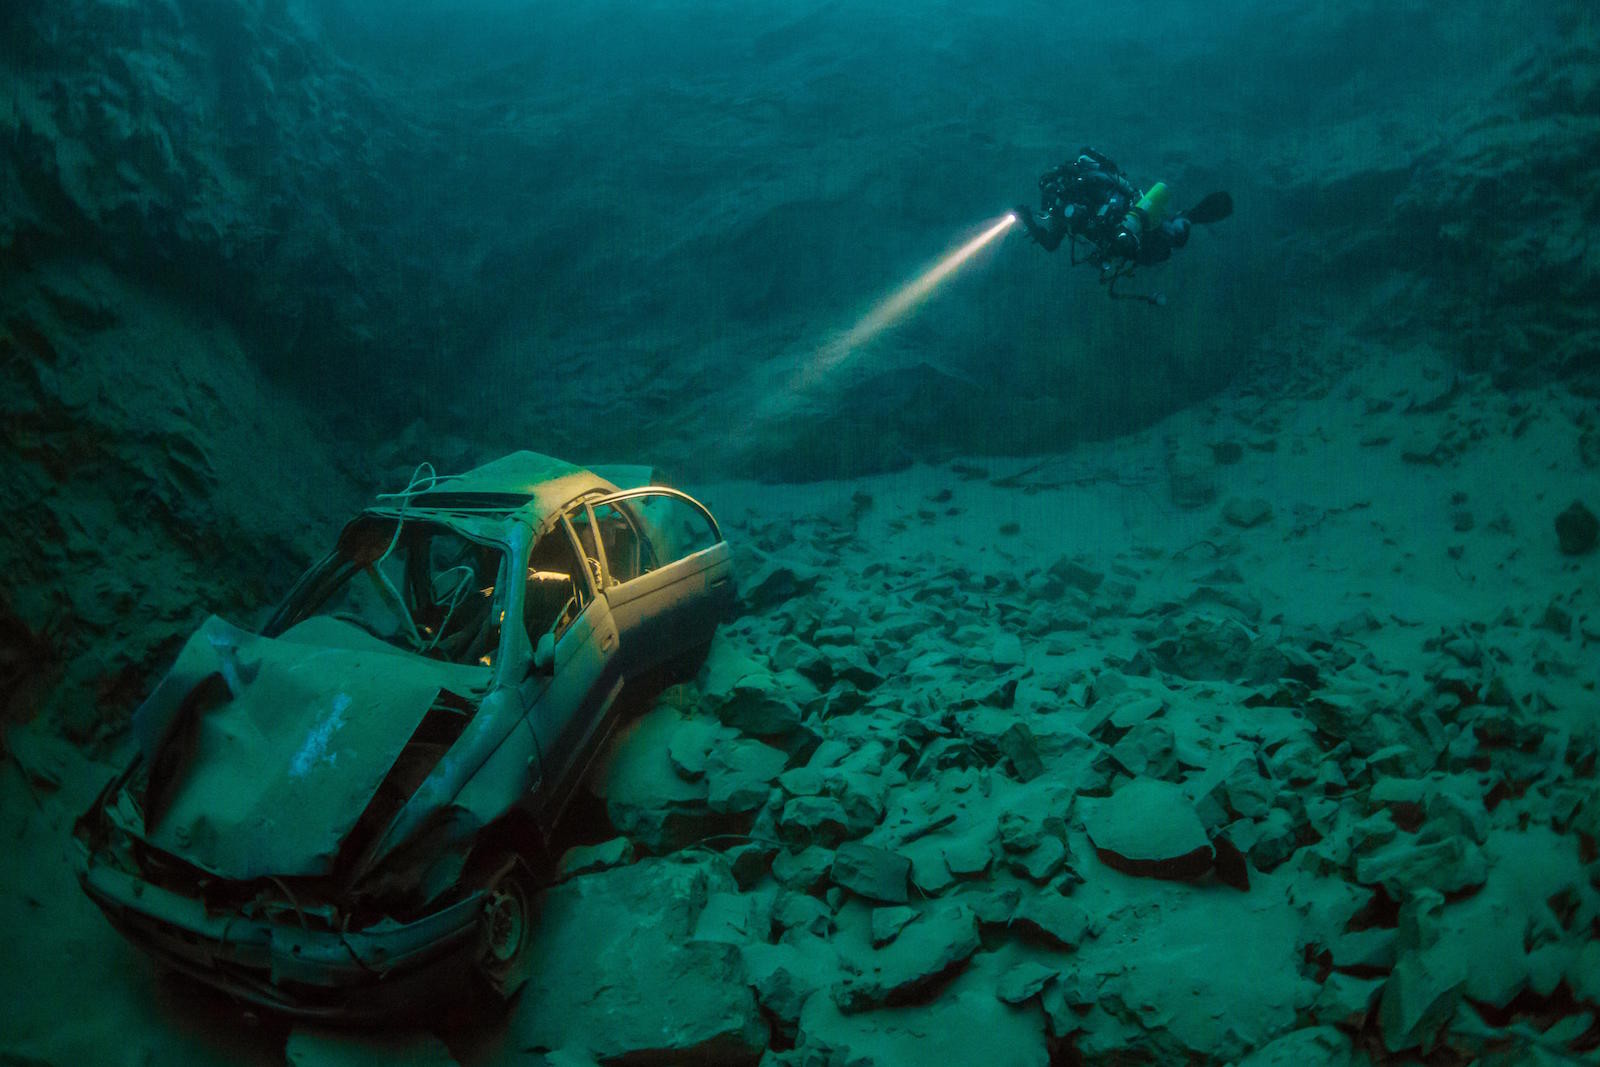 Затонувший автомобиль около Чепстоу, Уэльс. Моря и океаны, интересное, подводный мир